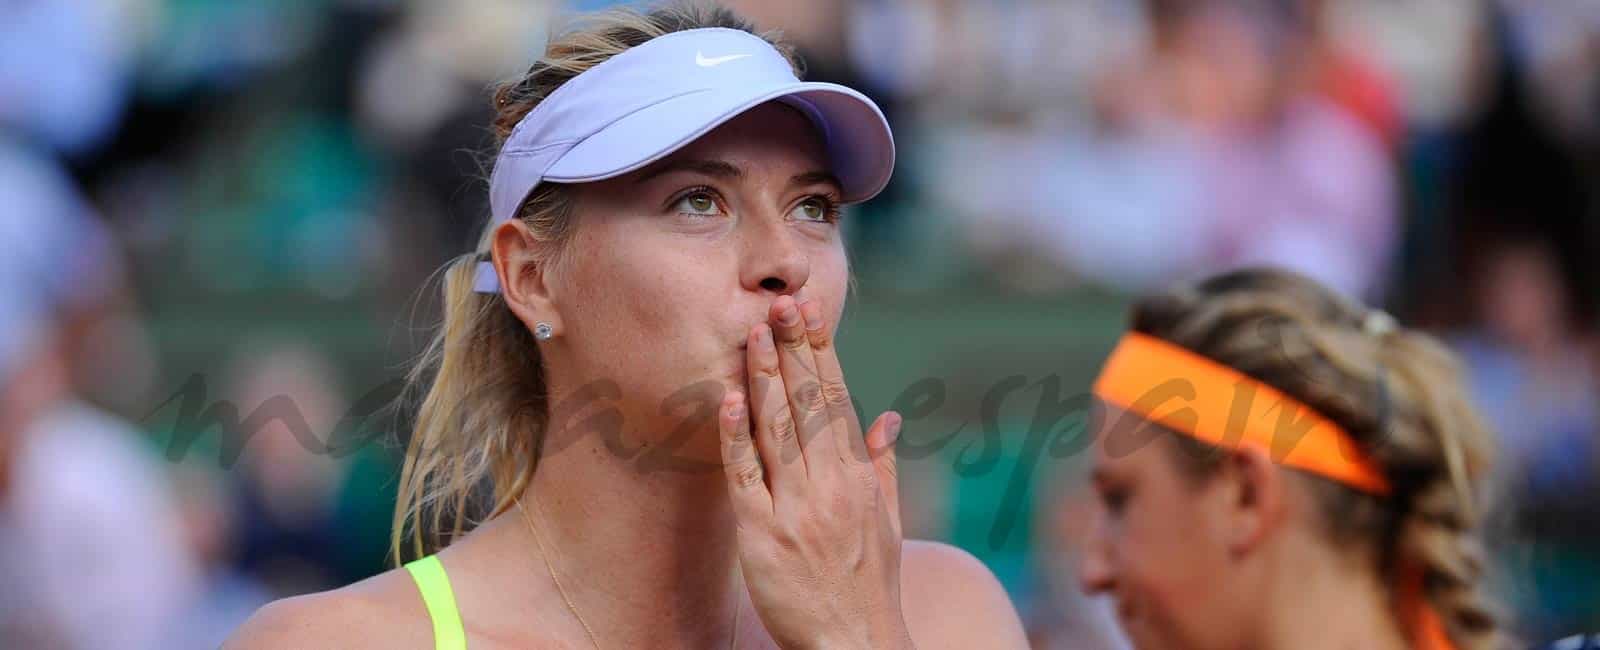 Confirmada la sanción de dos años, a la tenista María Sharapova, por dopaje